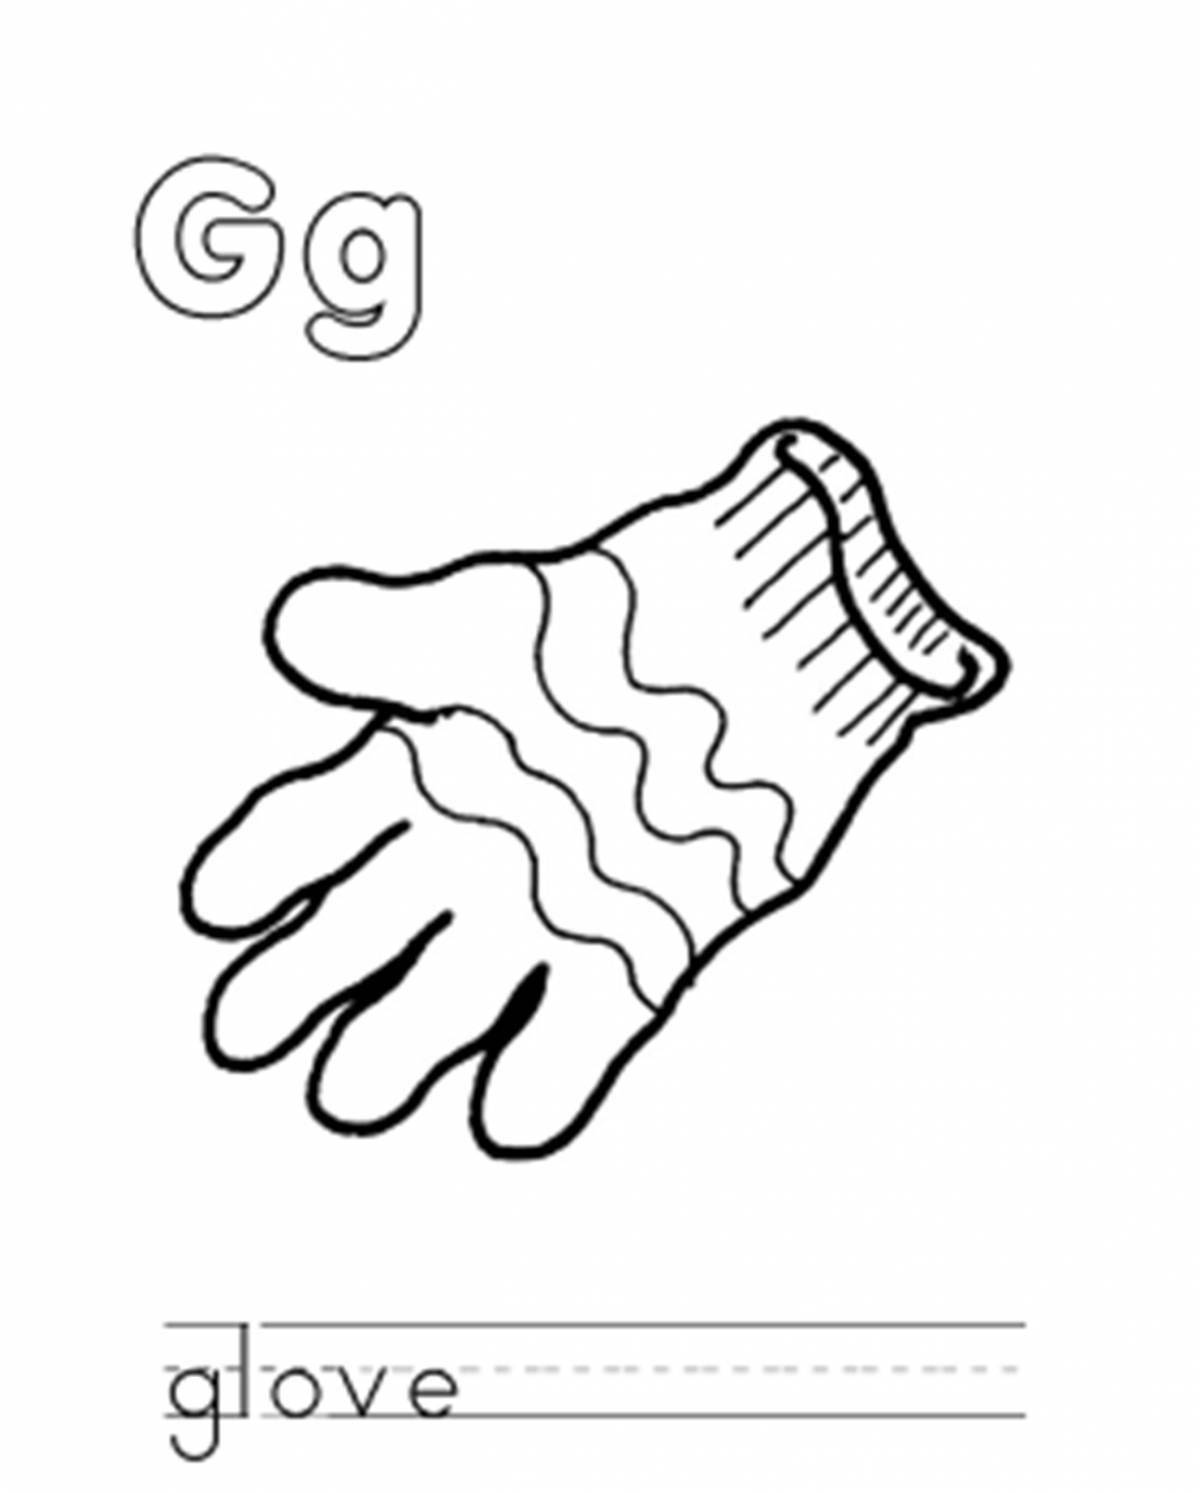 Смелые перчатки для раскрашивания страницы